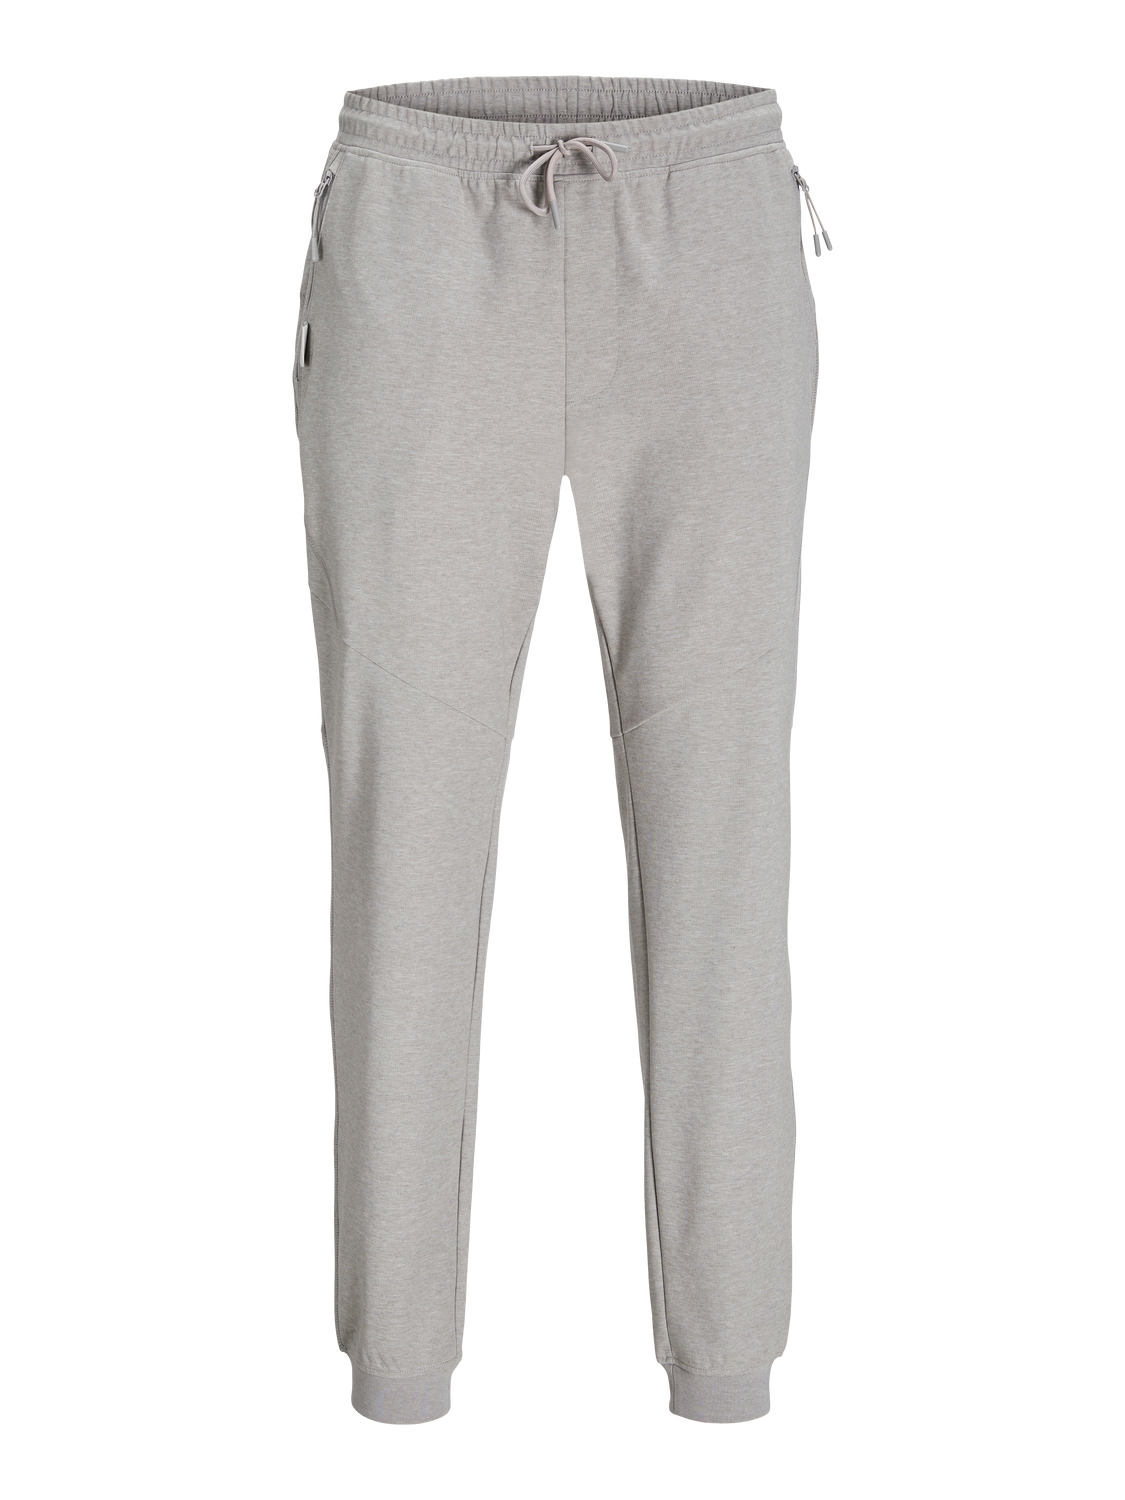 Jack & Jones Slim Fit Track Pants -Light Grey Melange - 12253727